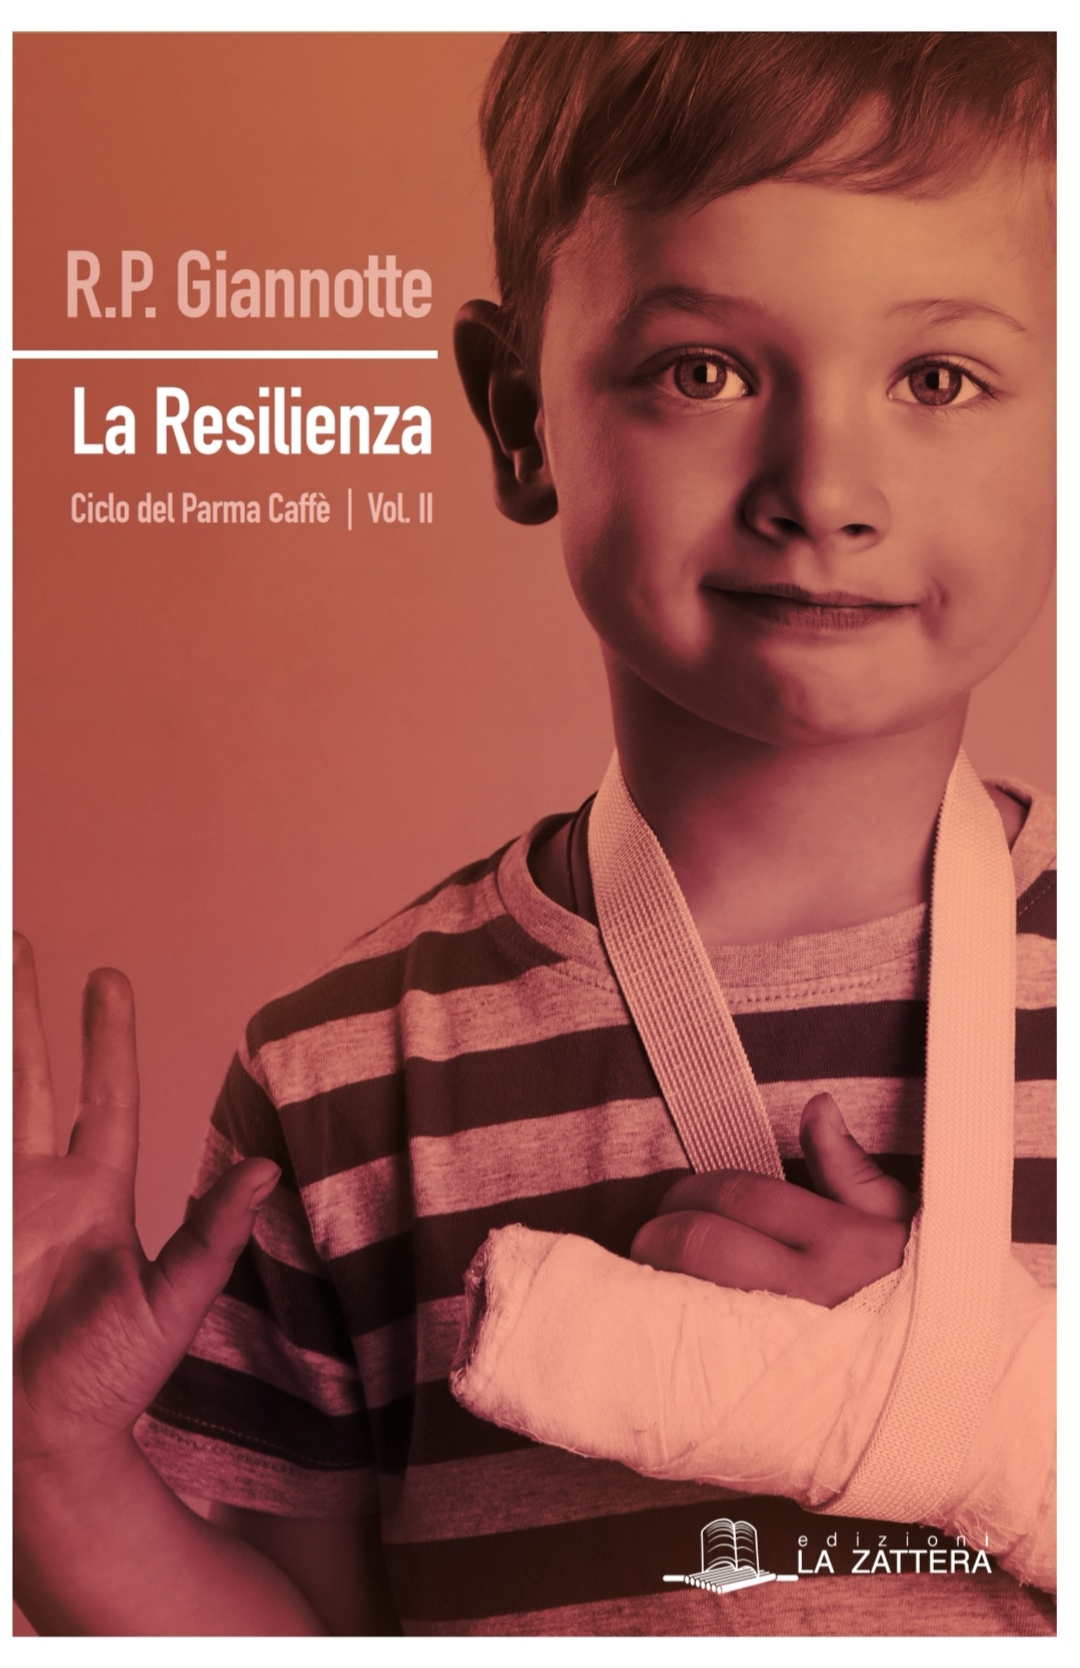 R. P. Giannotte presenta il romanzo La resilienza